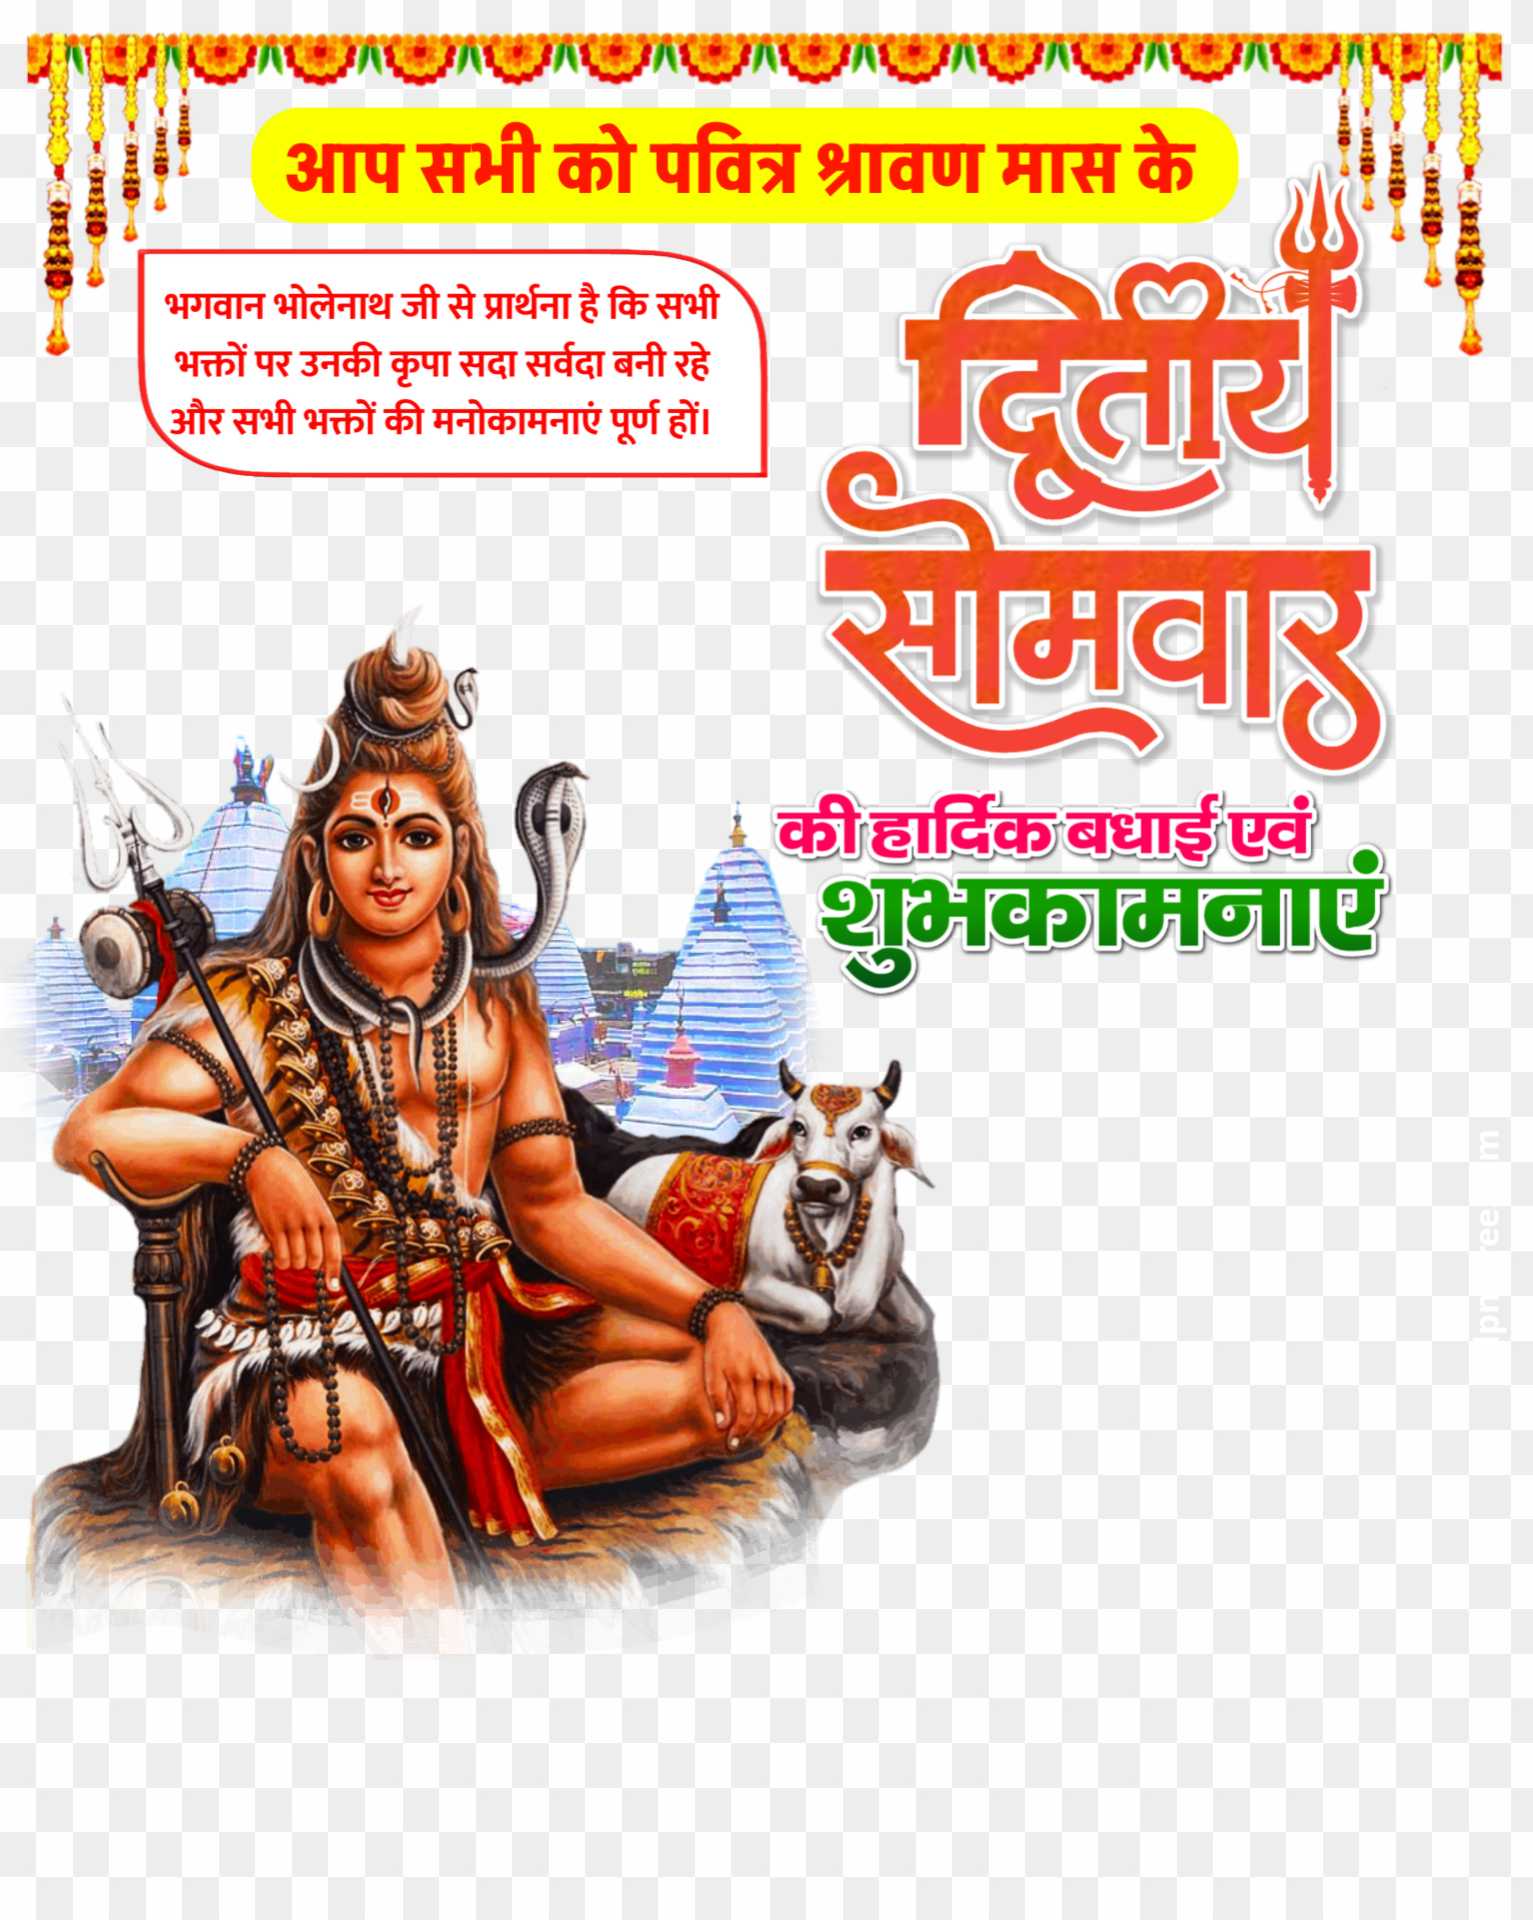 Shravan mast dwitiya Somwar text PNG images download